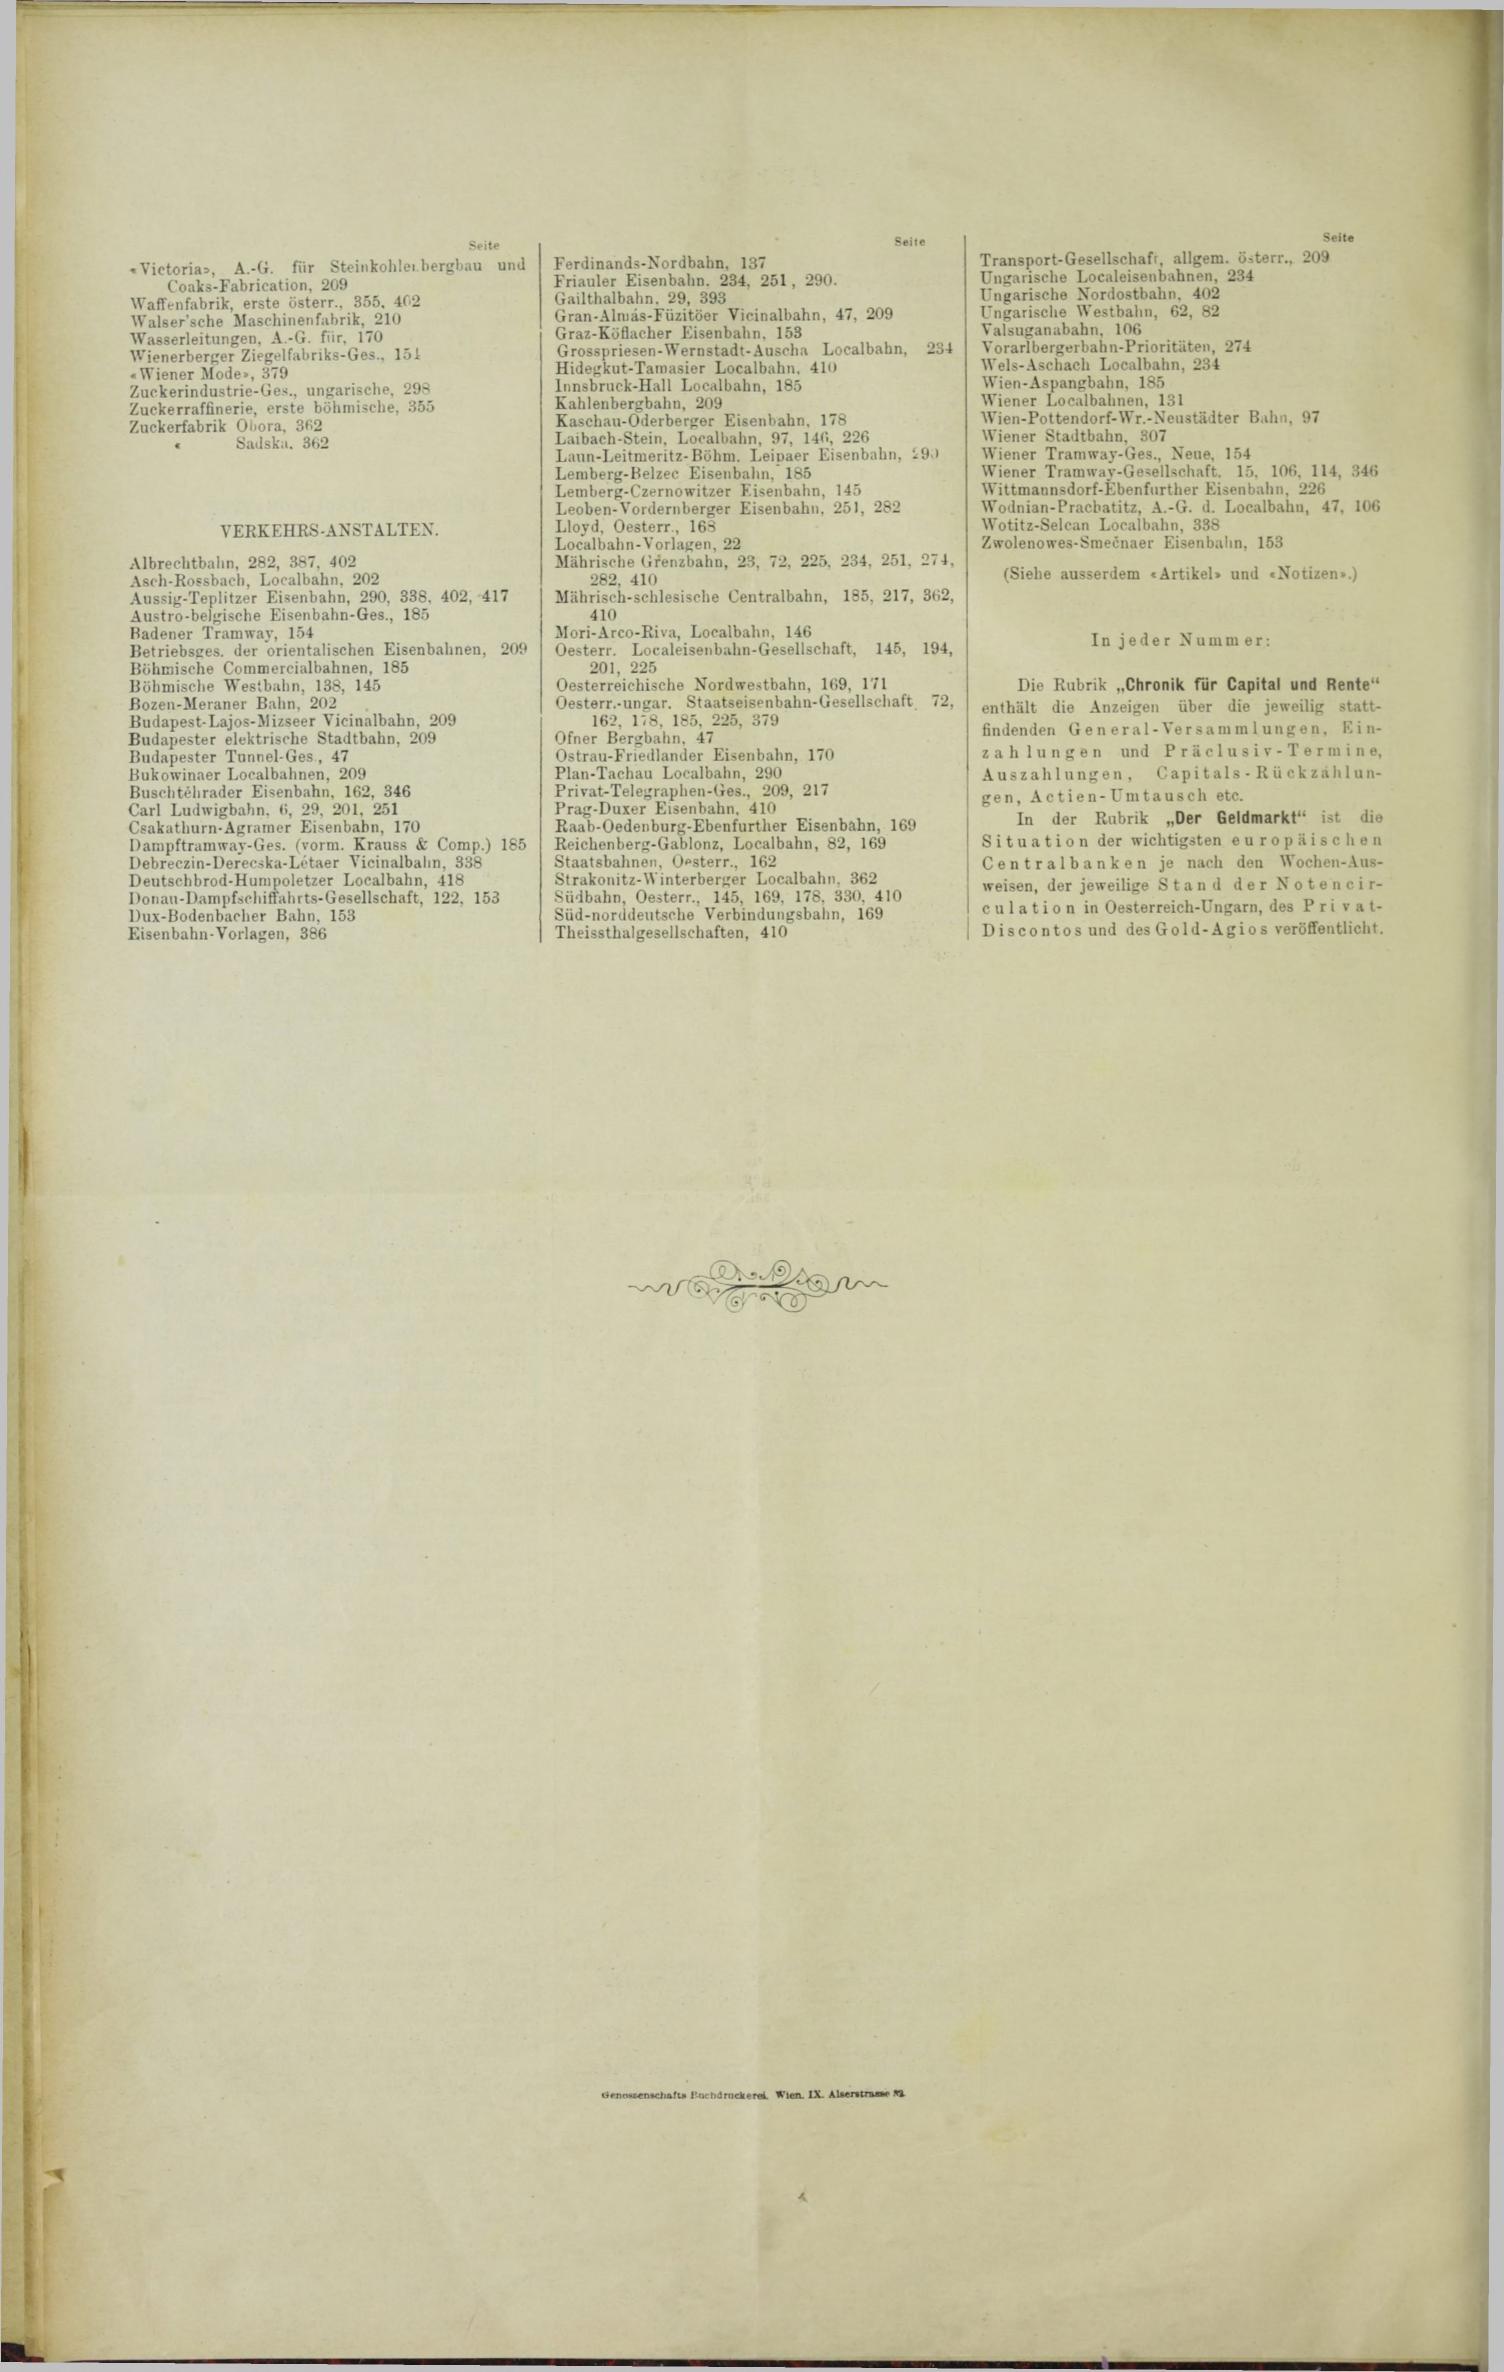 Der Tresor 13.04.1893 - Seite 12